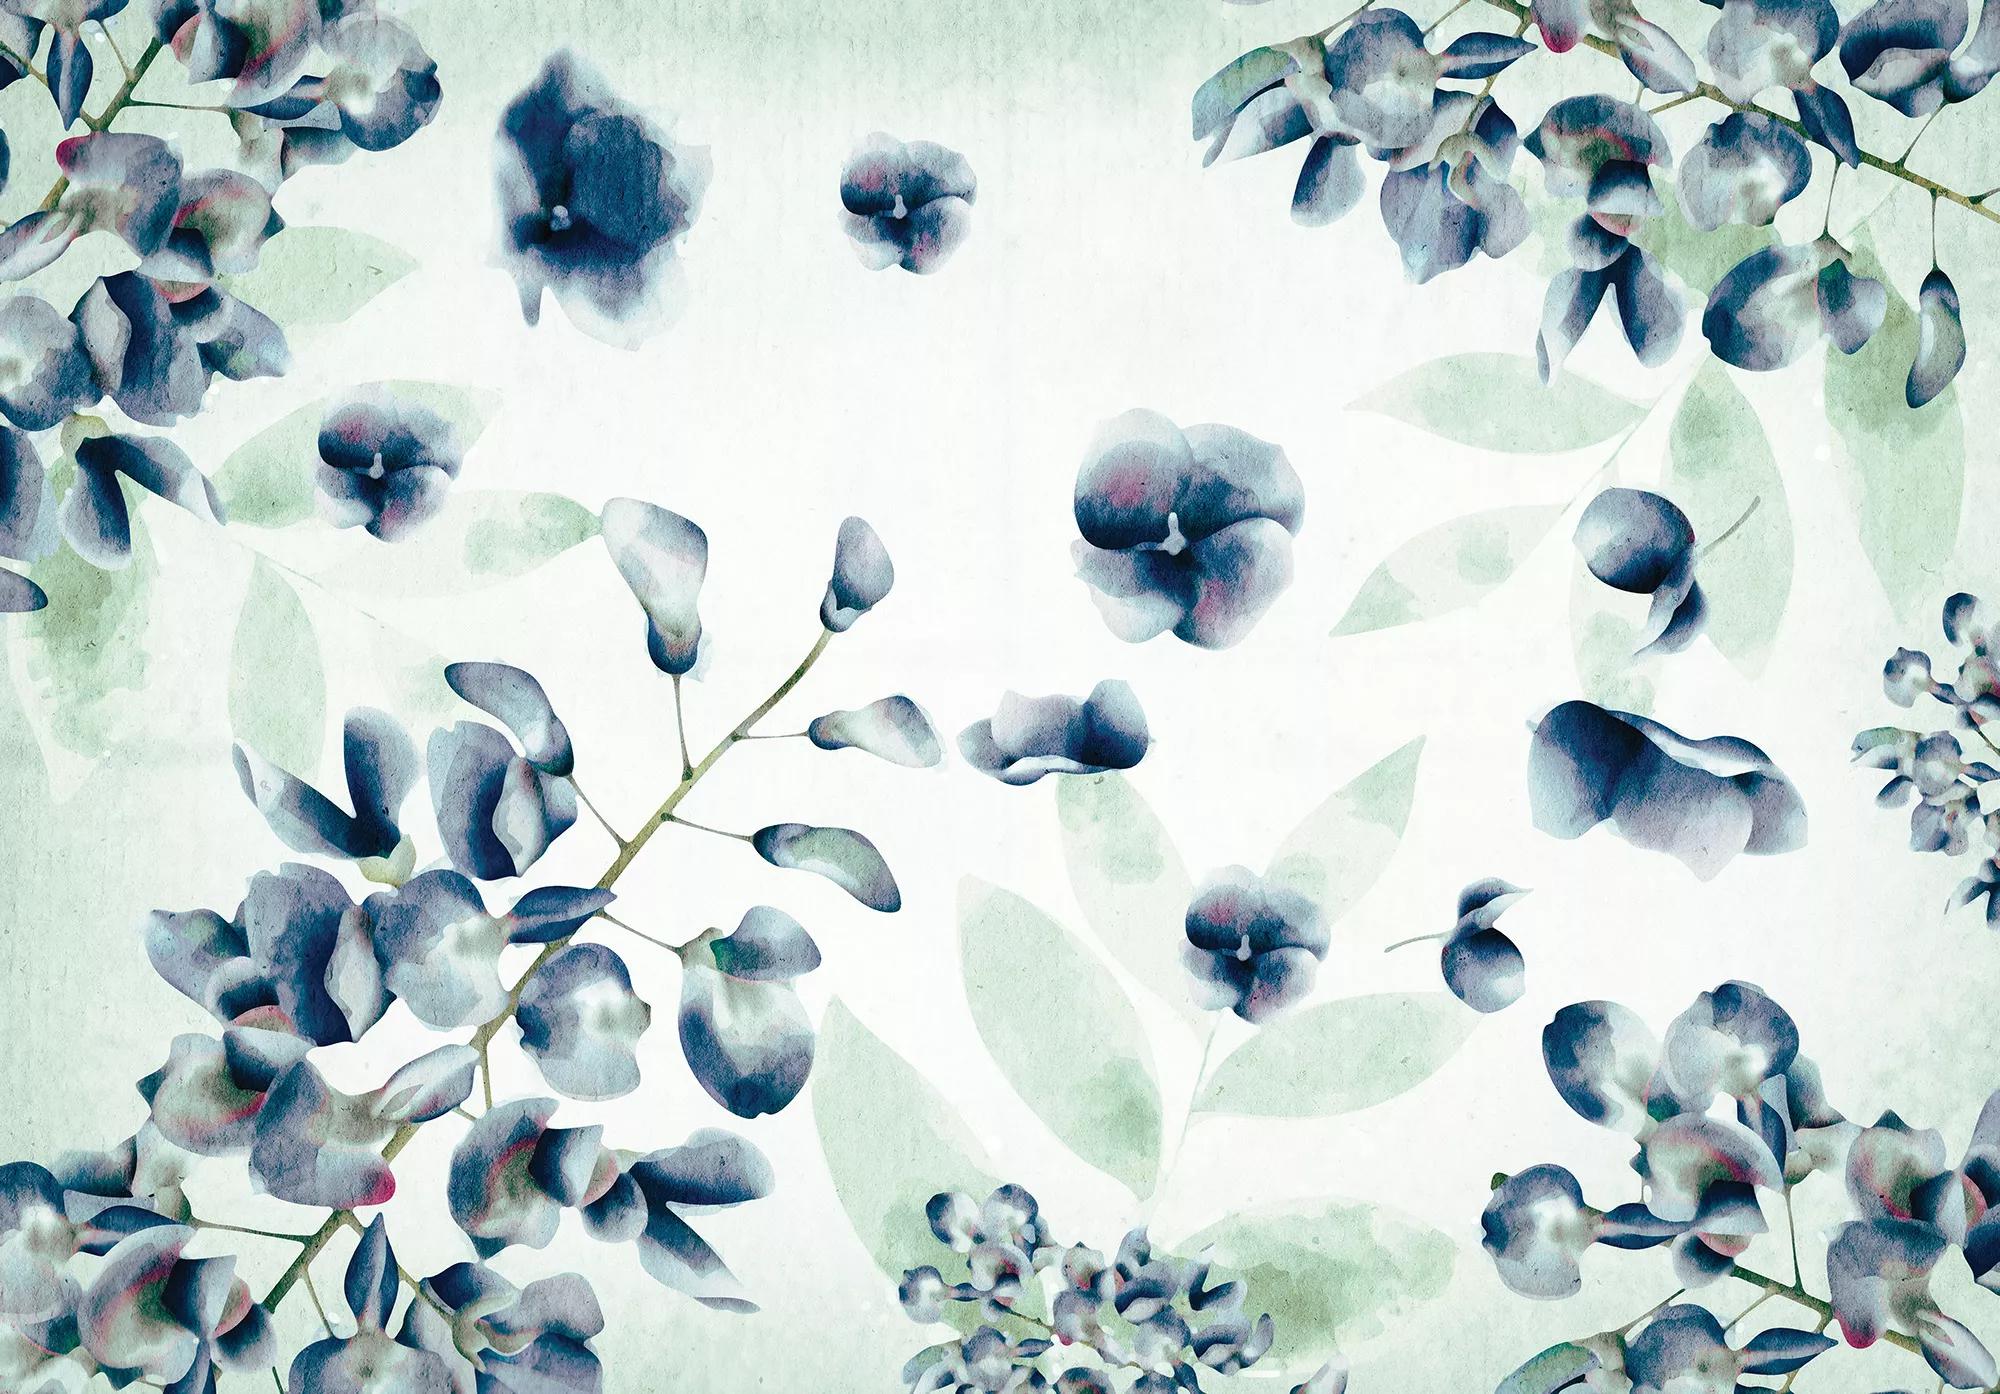 Fali poszter, fotótapéta akvarell hatású virágmintával kék színvilágban 368x254 vlies